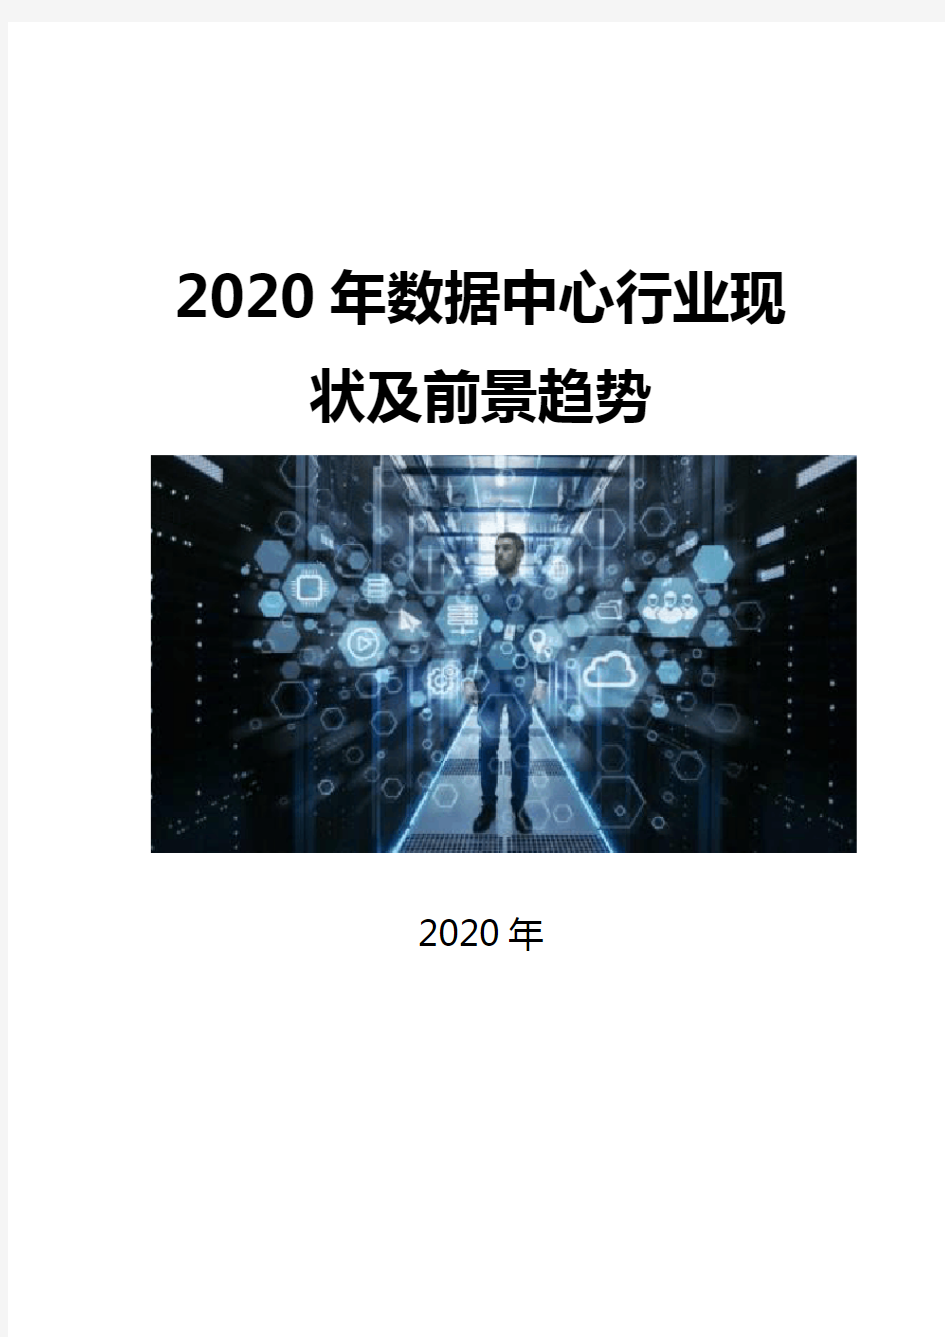 2020数据中心行业现状及前景趋势